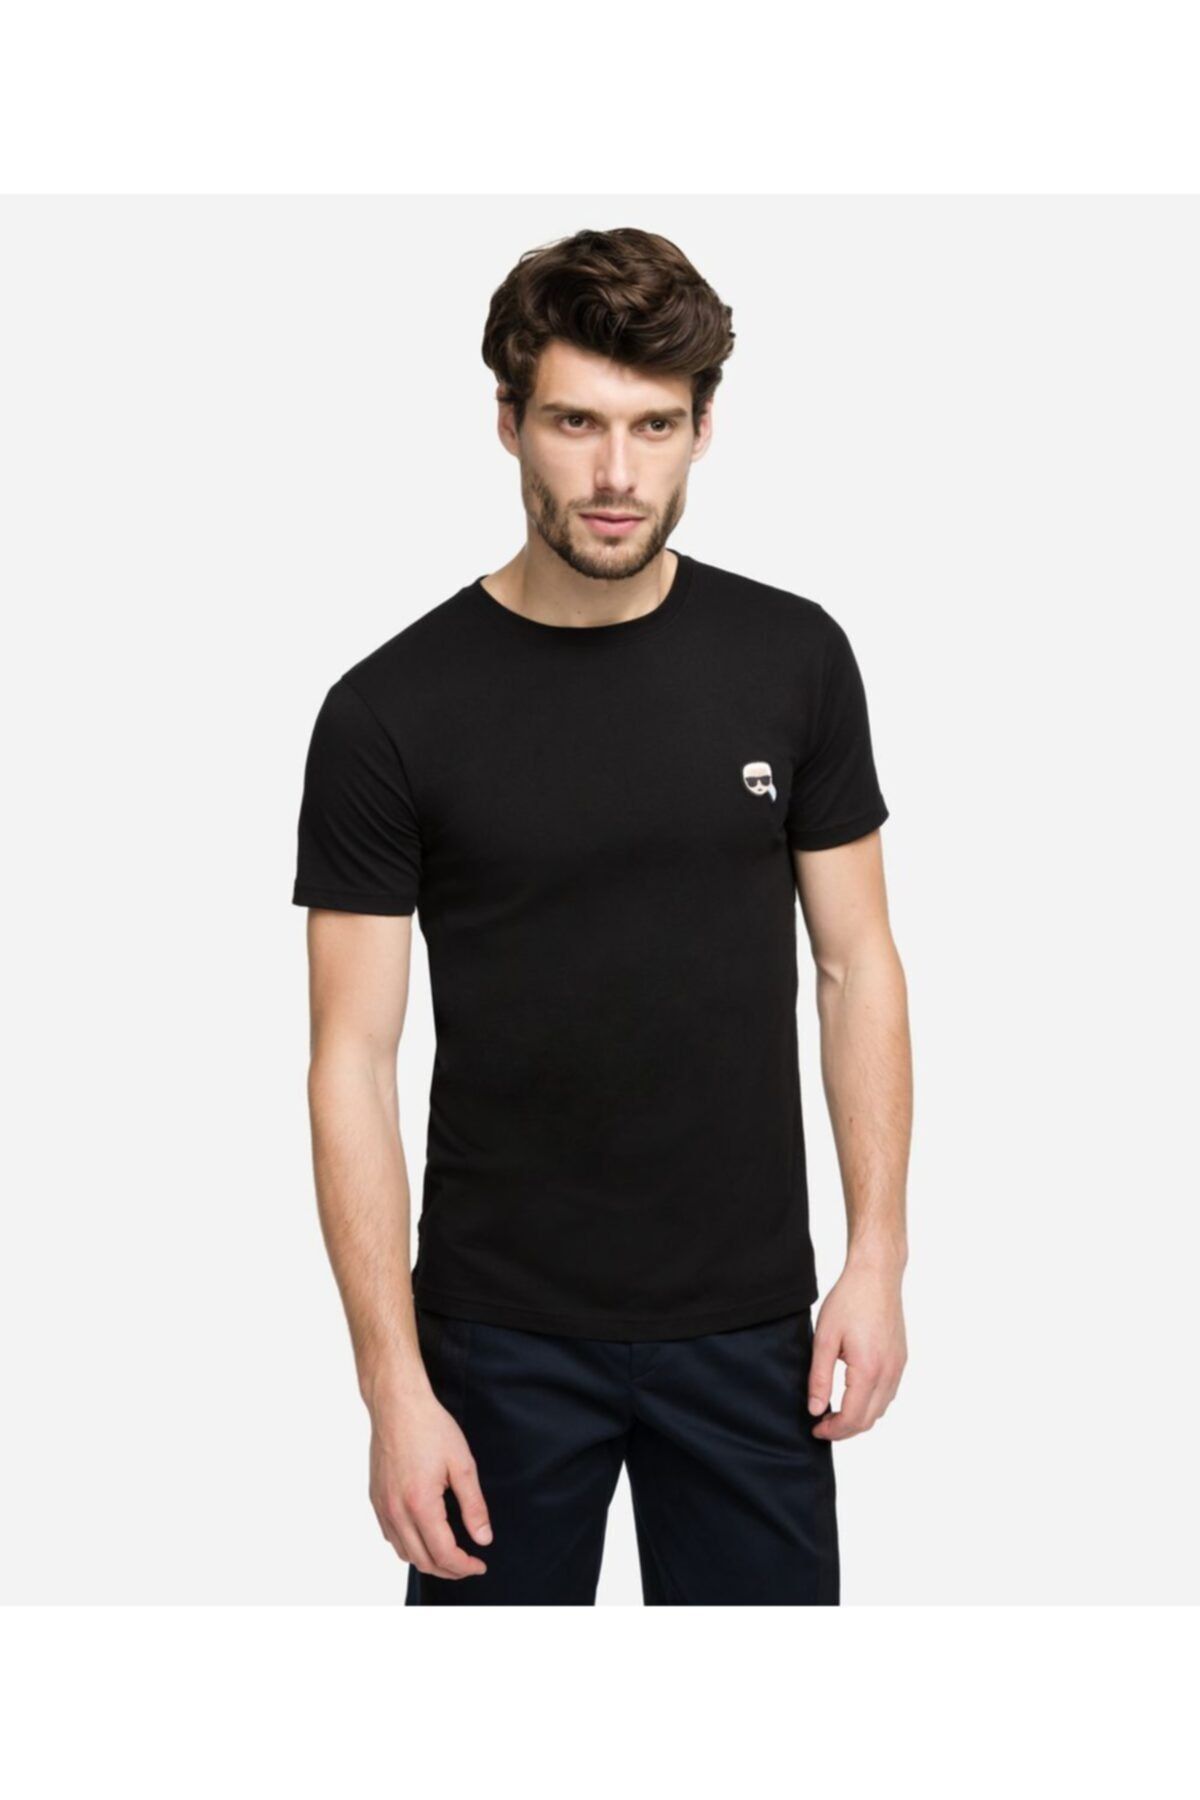 Karl Lagerfeld Sıfır Yaka Siyah Erkek T-shirt